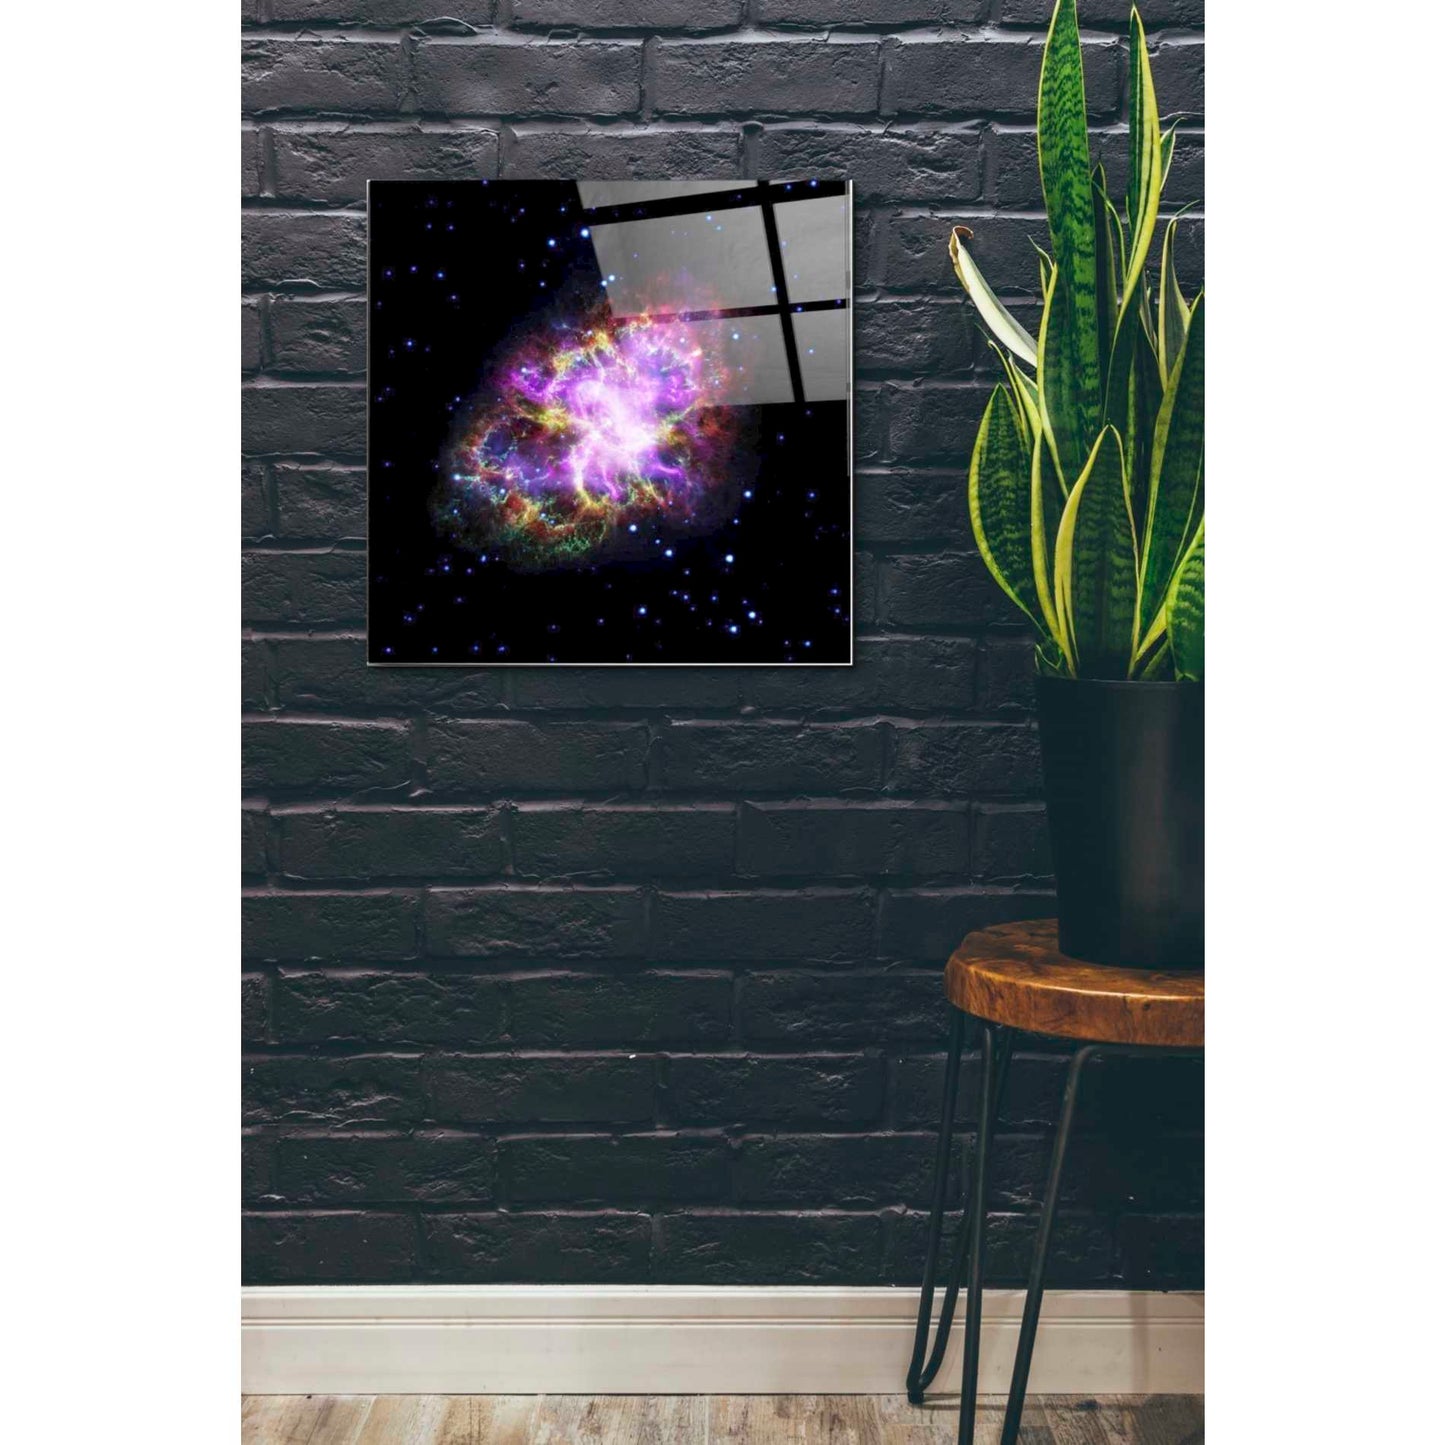 Epic Art "Crab Nebula Multi-Wavelengths" Hubble Space Telescope Acrylic Glass Wall Art,24x24